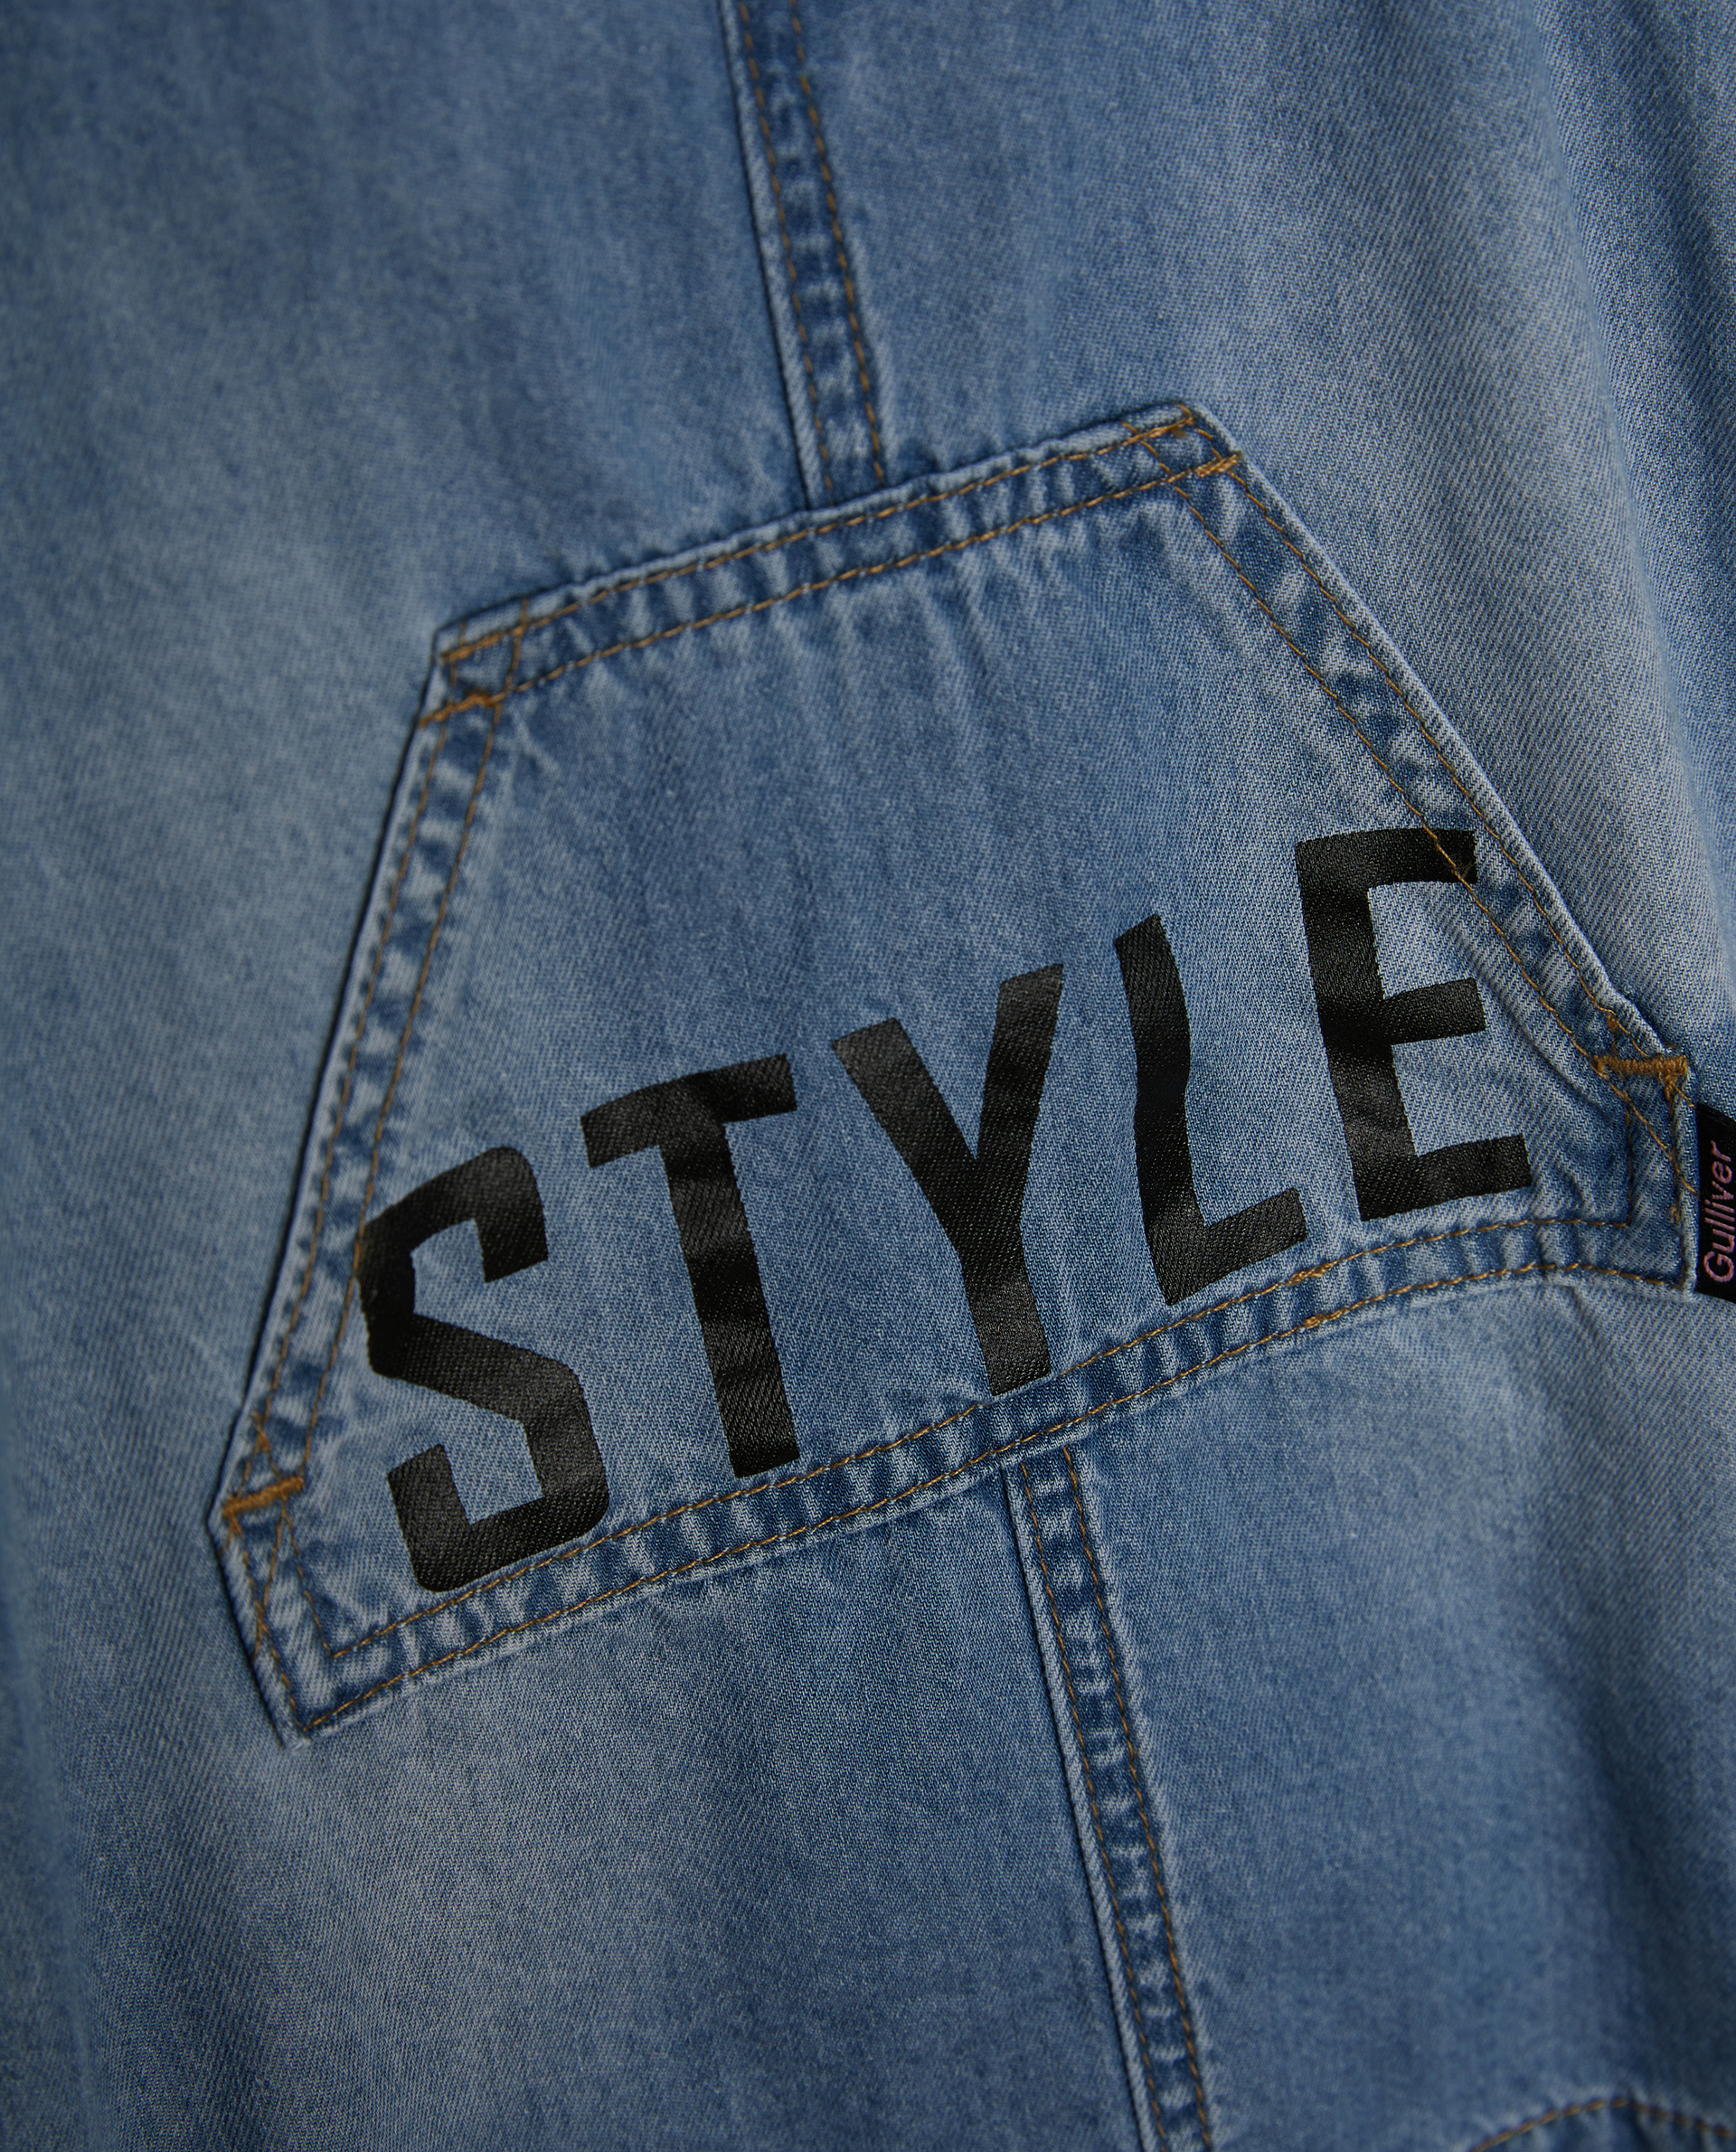 Сарафан джинсовый с карманом Gulliver 12131GBC2501, размер 80, цвет голубой мини - фото 2